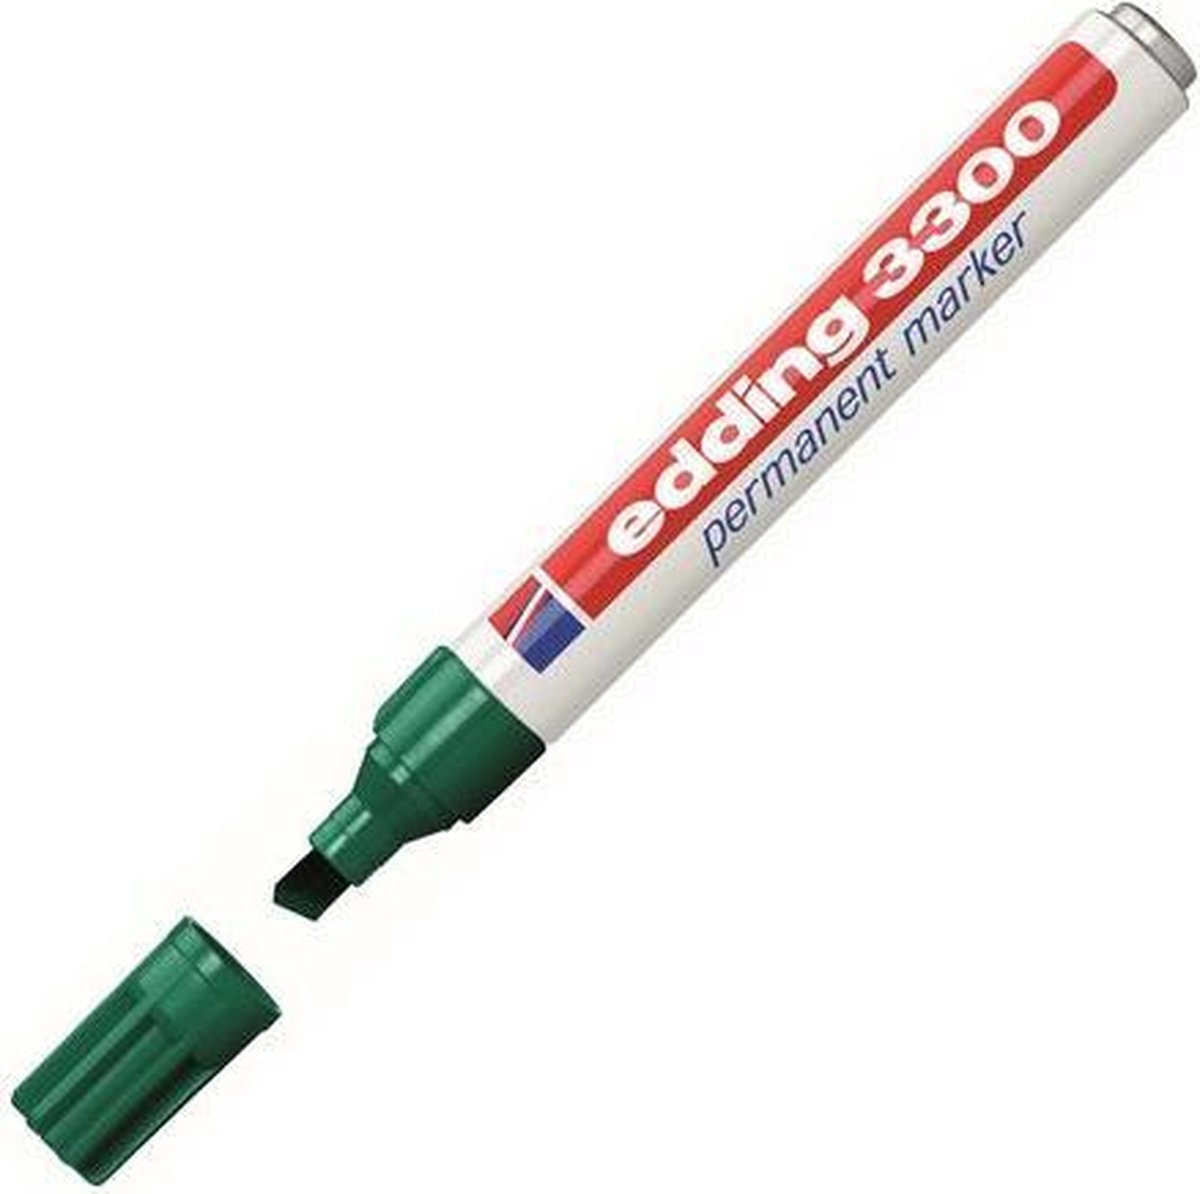 Viltstift edding 3300 schuin 1-5mm groen | Omdoos a 10 stuk | 10 stuks